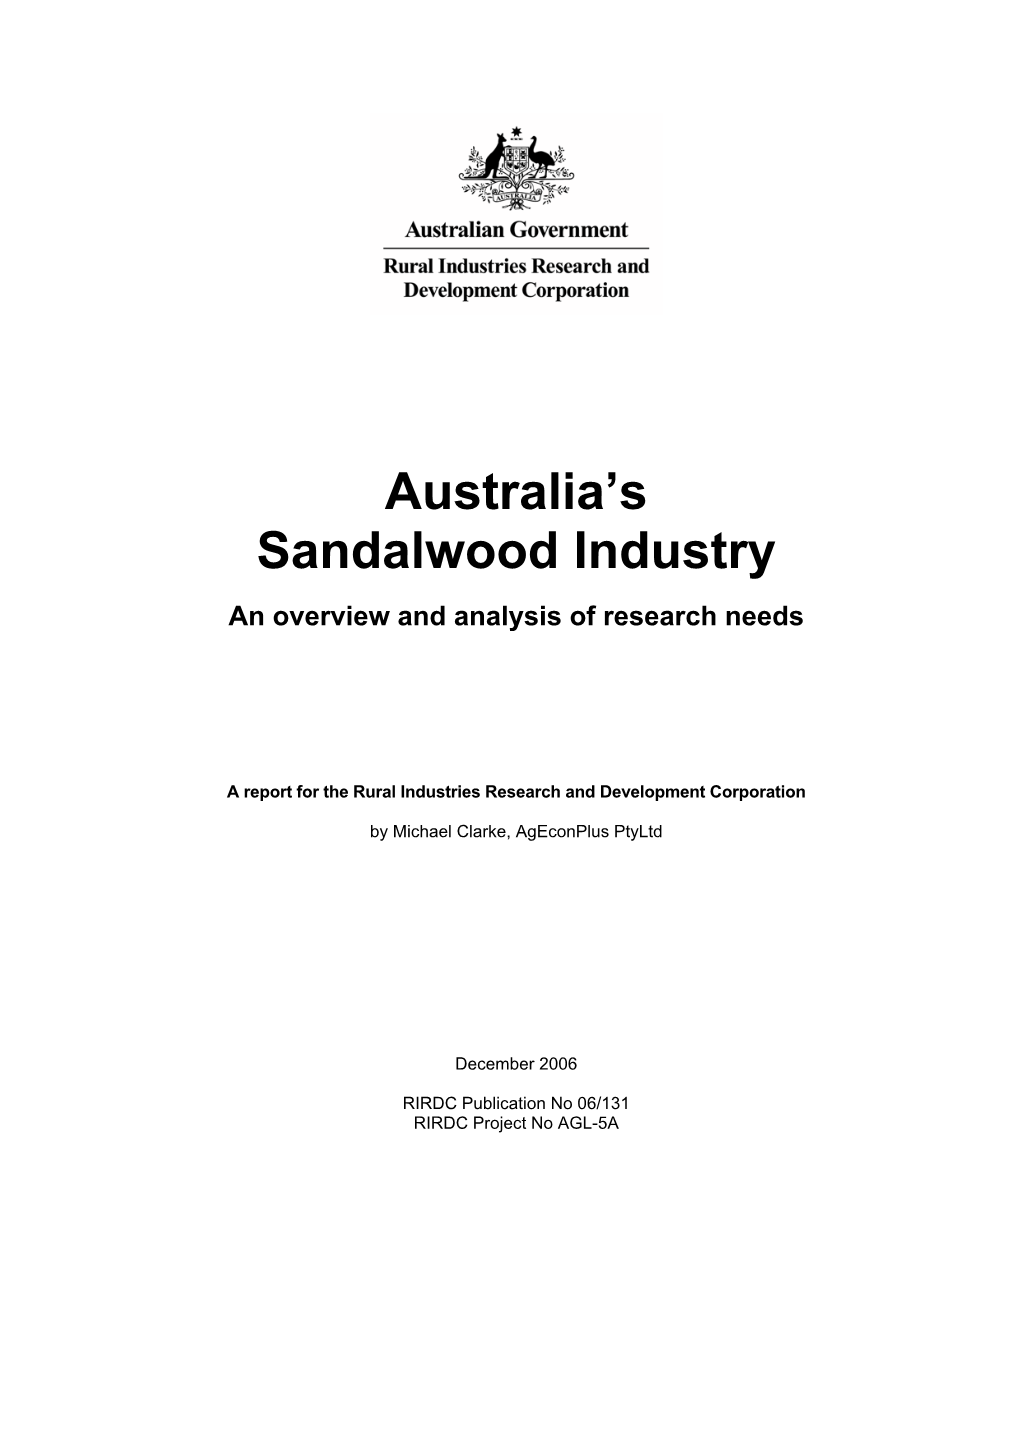 Australia's Sandalwood Industry